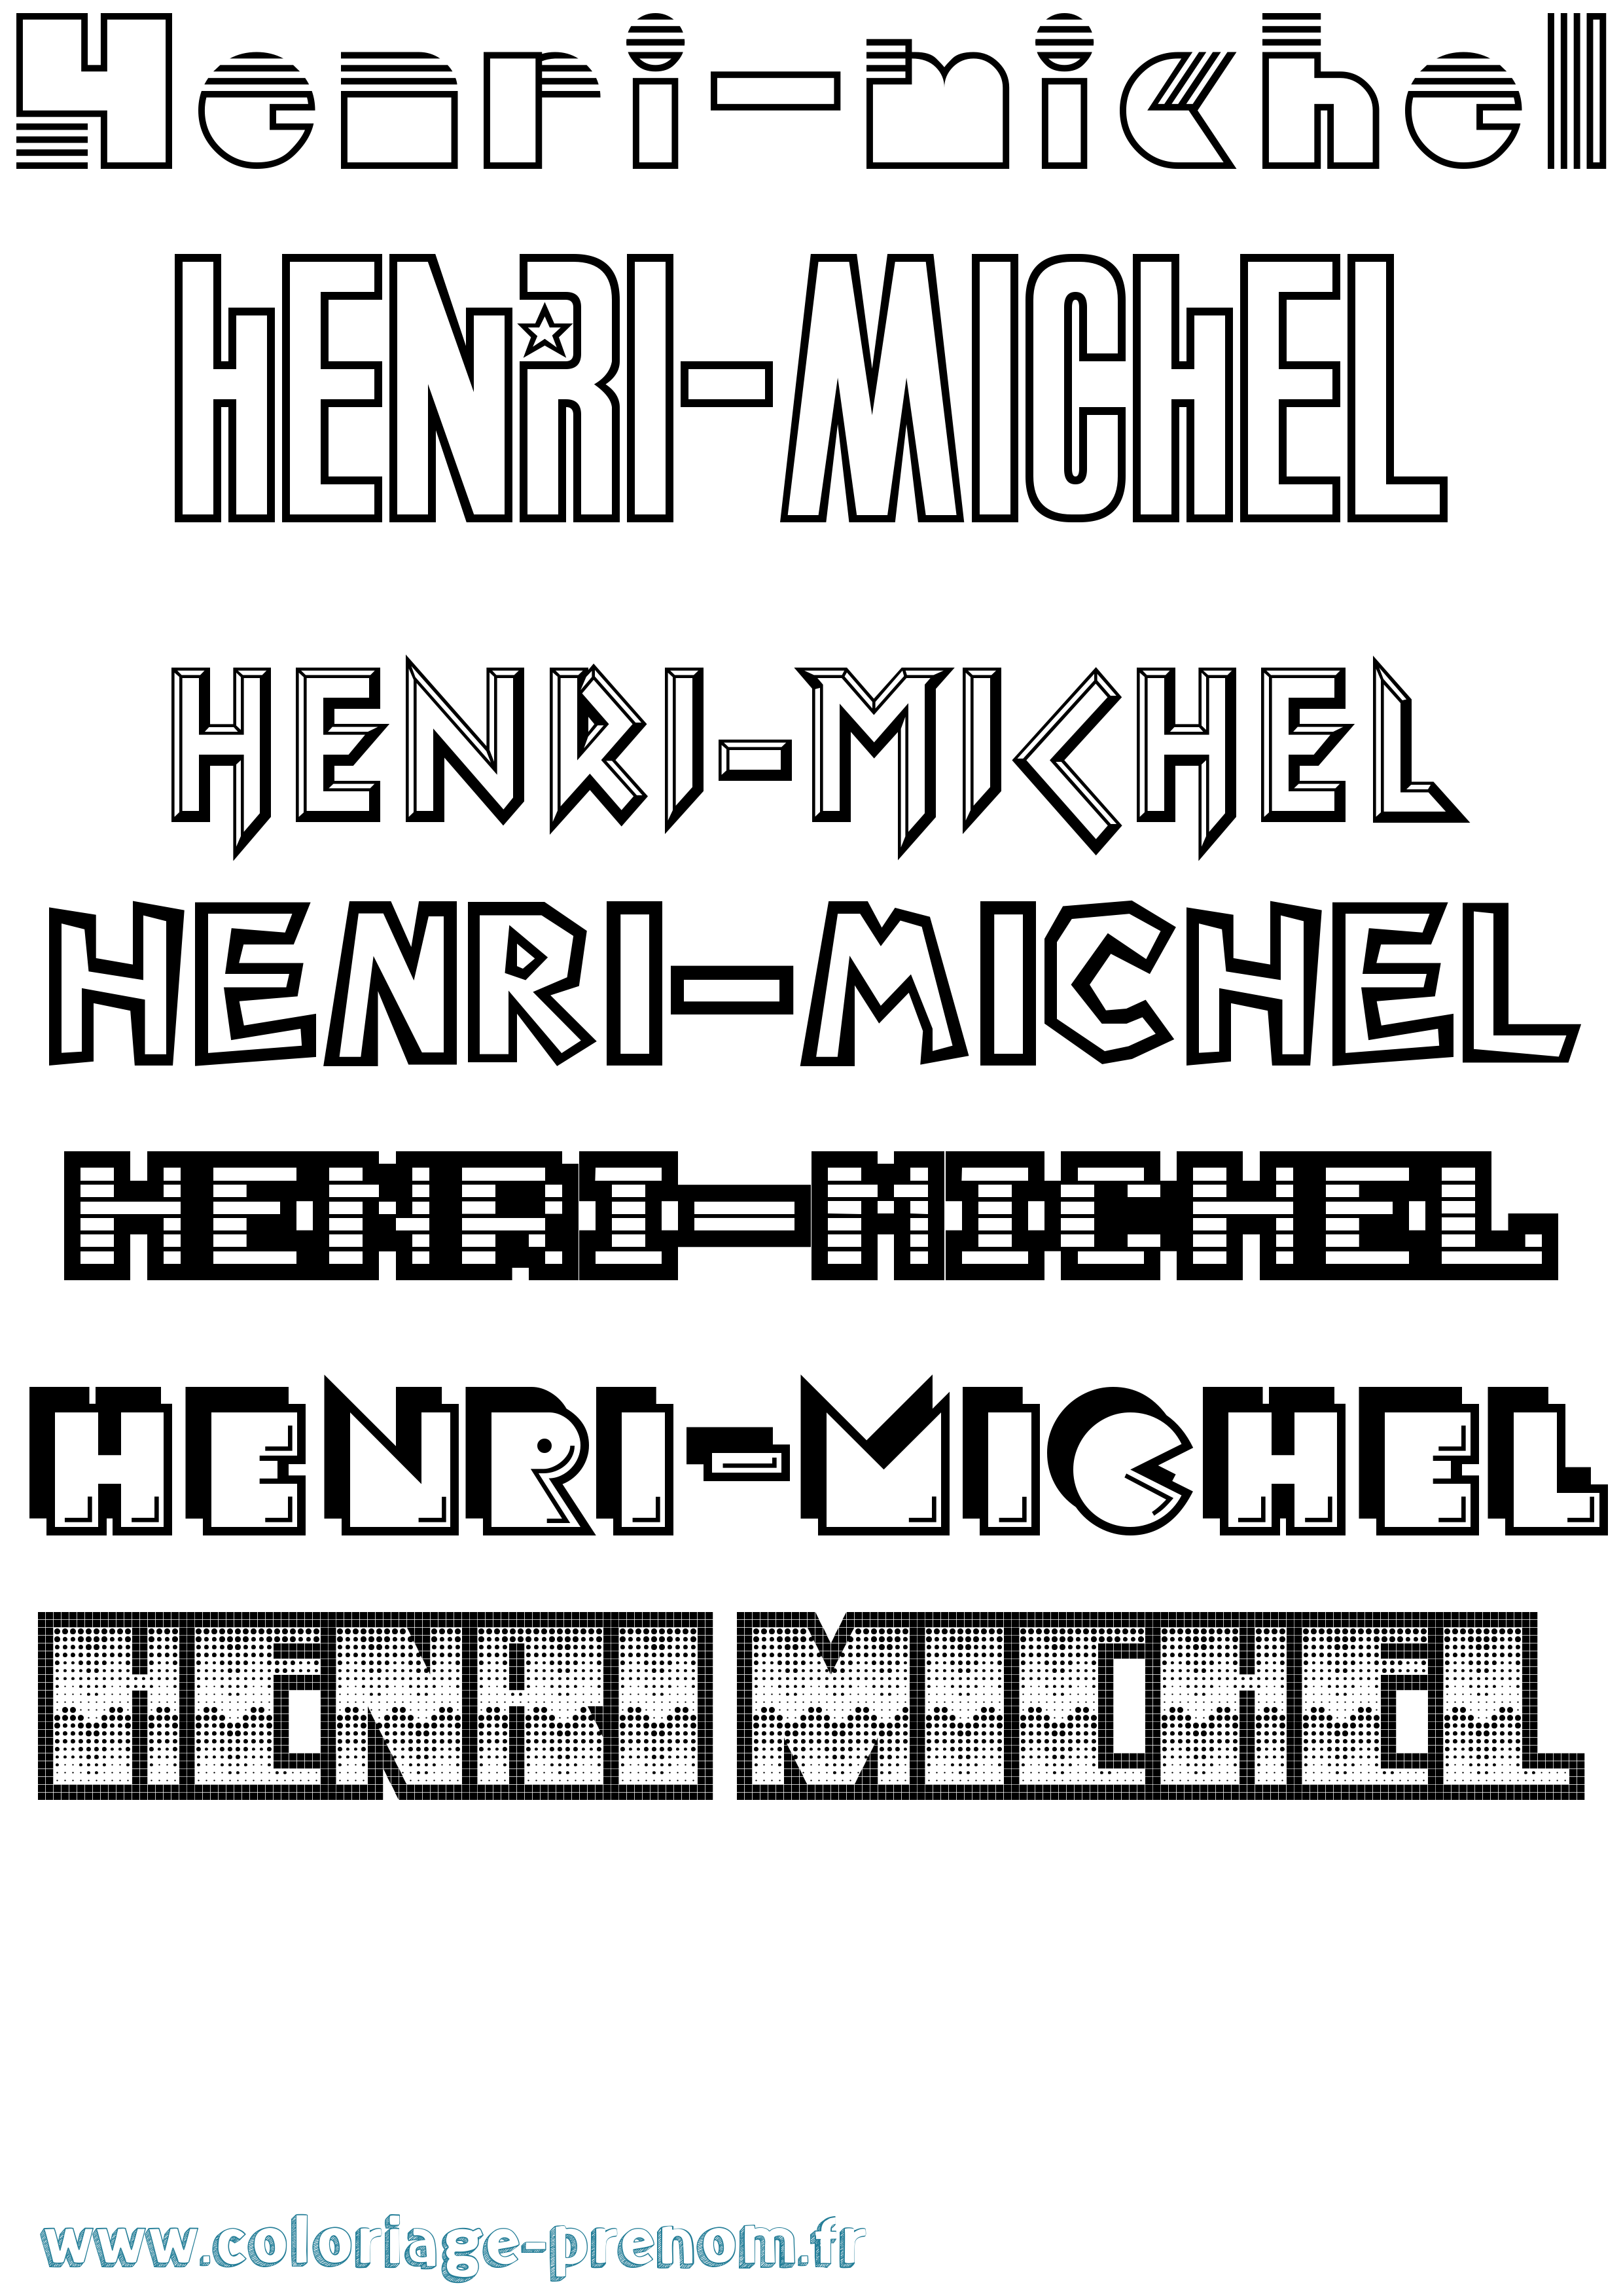 Coloriage prénom Henri-Michel Jeux Vidéos